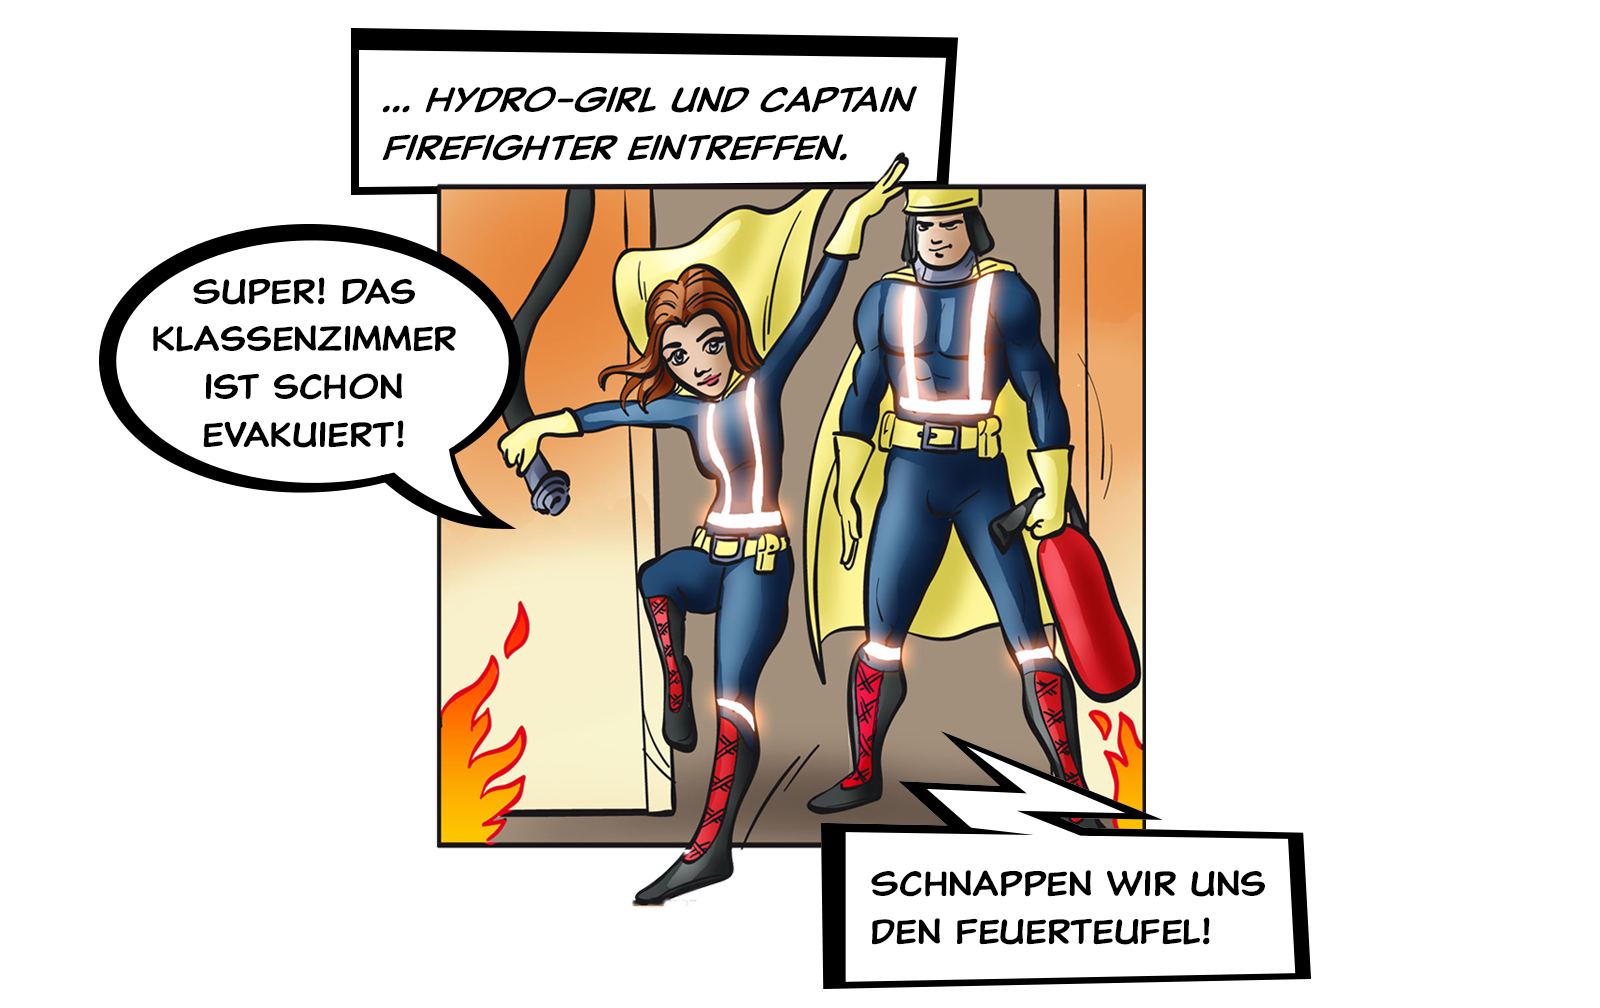 ... Hydro-Girl und Captain Firefighter eintreffen.